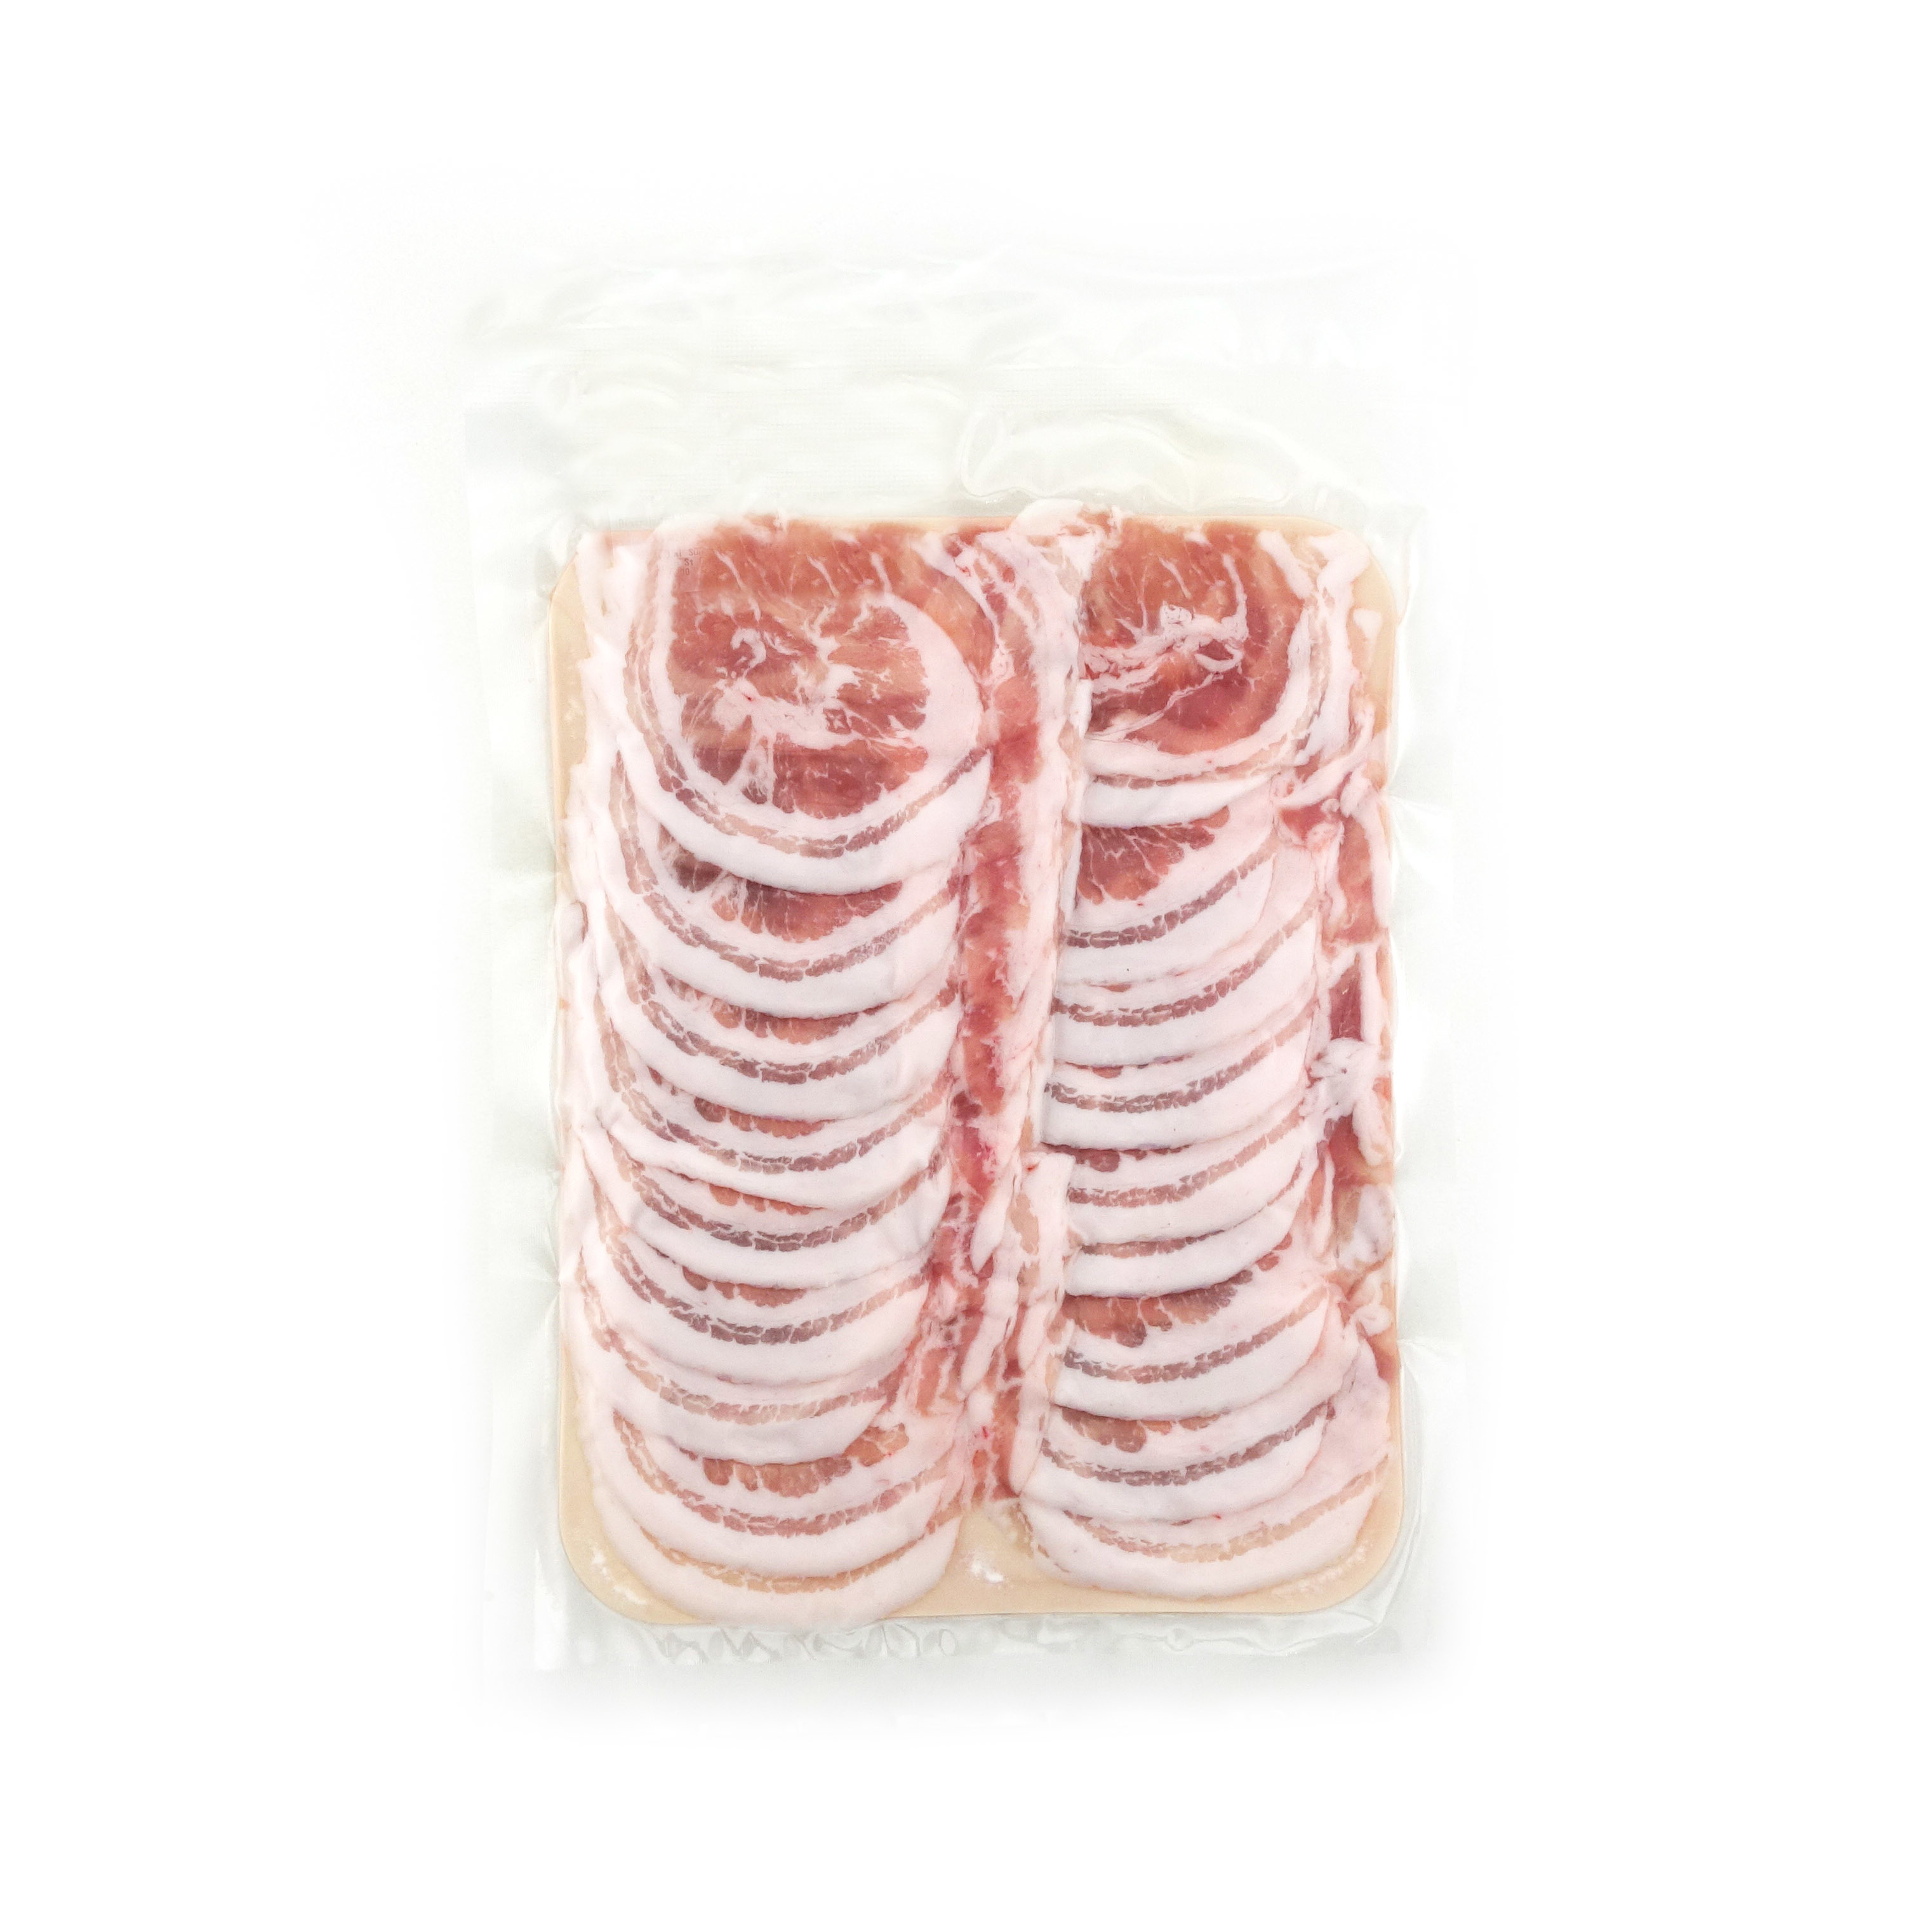 急凍丹麥有機豬腩肉片(火鍋用)200克*